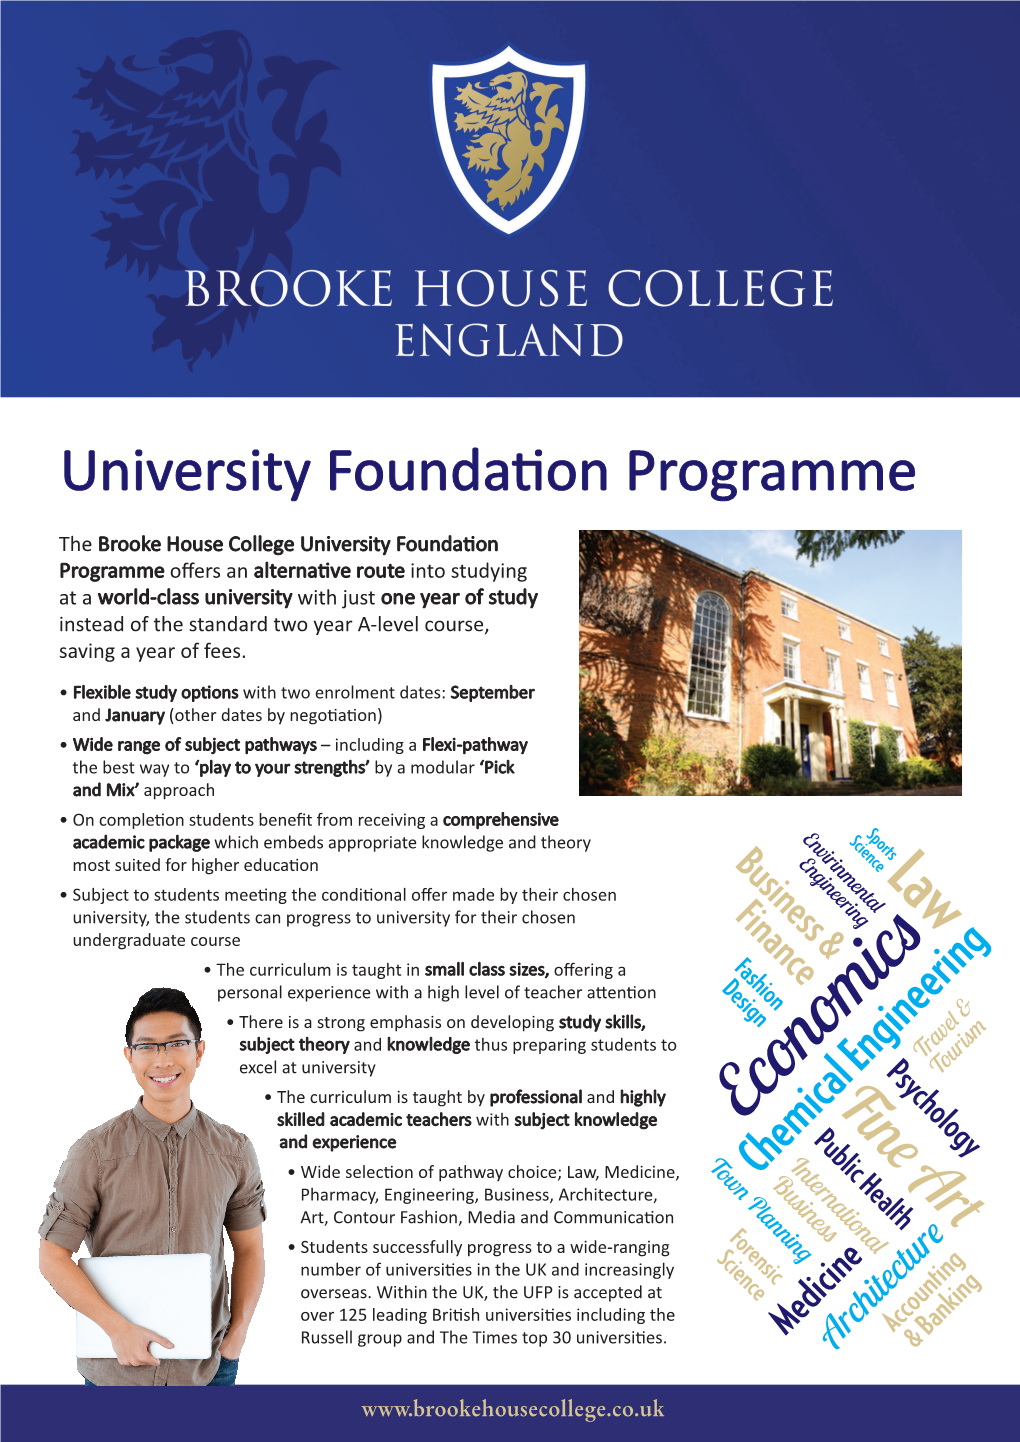 University Foundation Programme